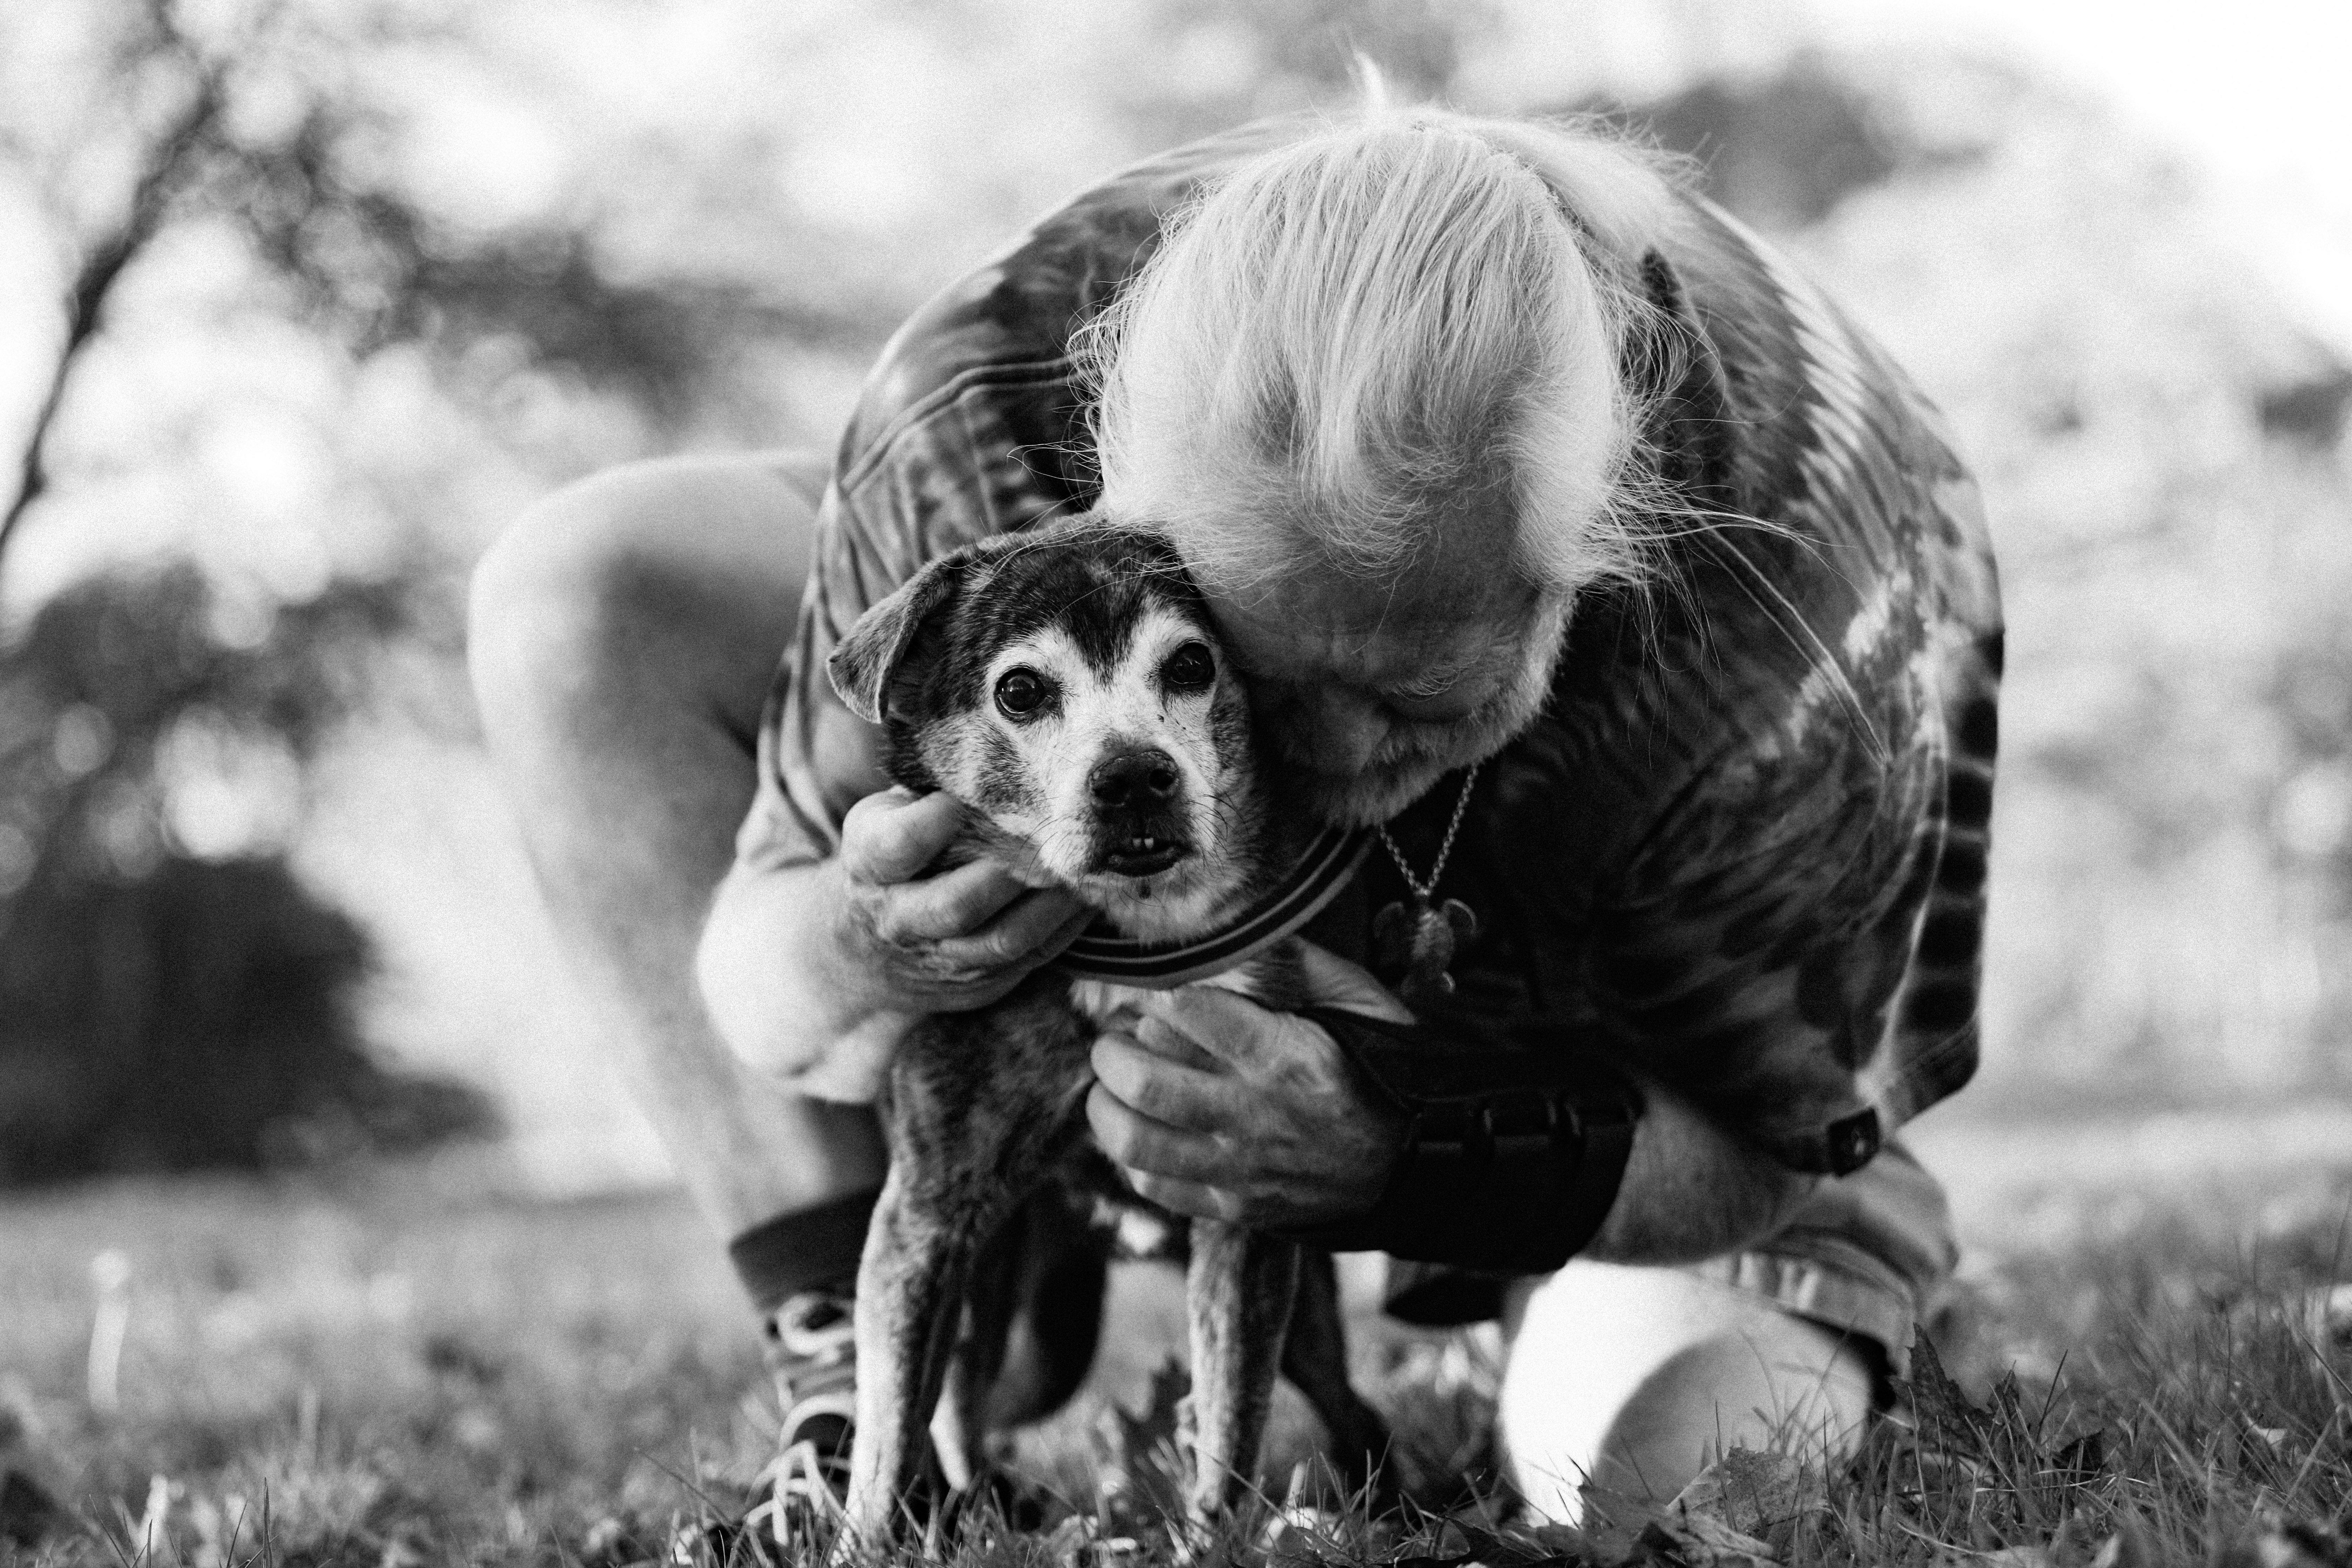 يلتقط مصور نهاية حياته صورًا لحيوانات أليفة تحتضر مجانًا لمساعدة أصحاب الحيوانات الأليفة في حزنهم